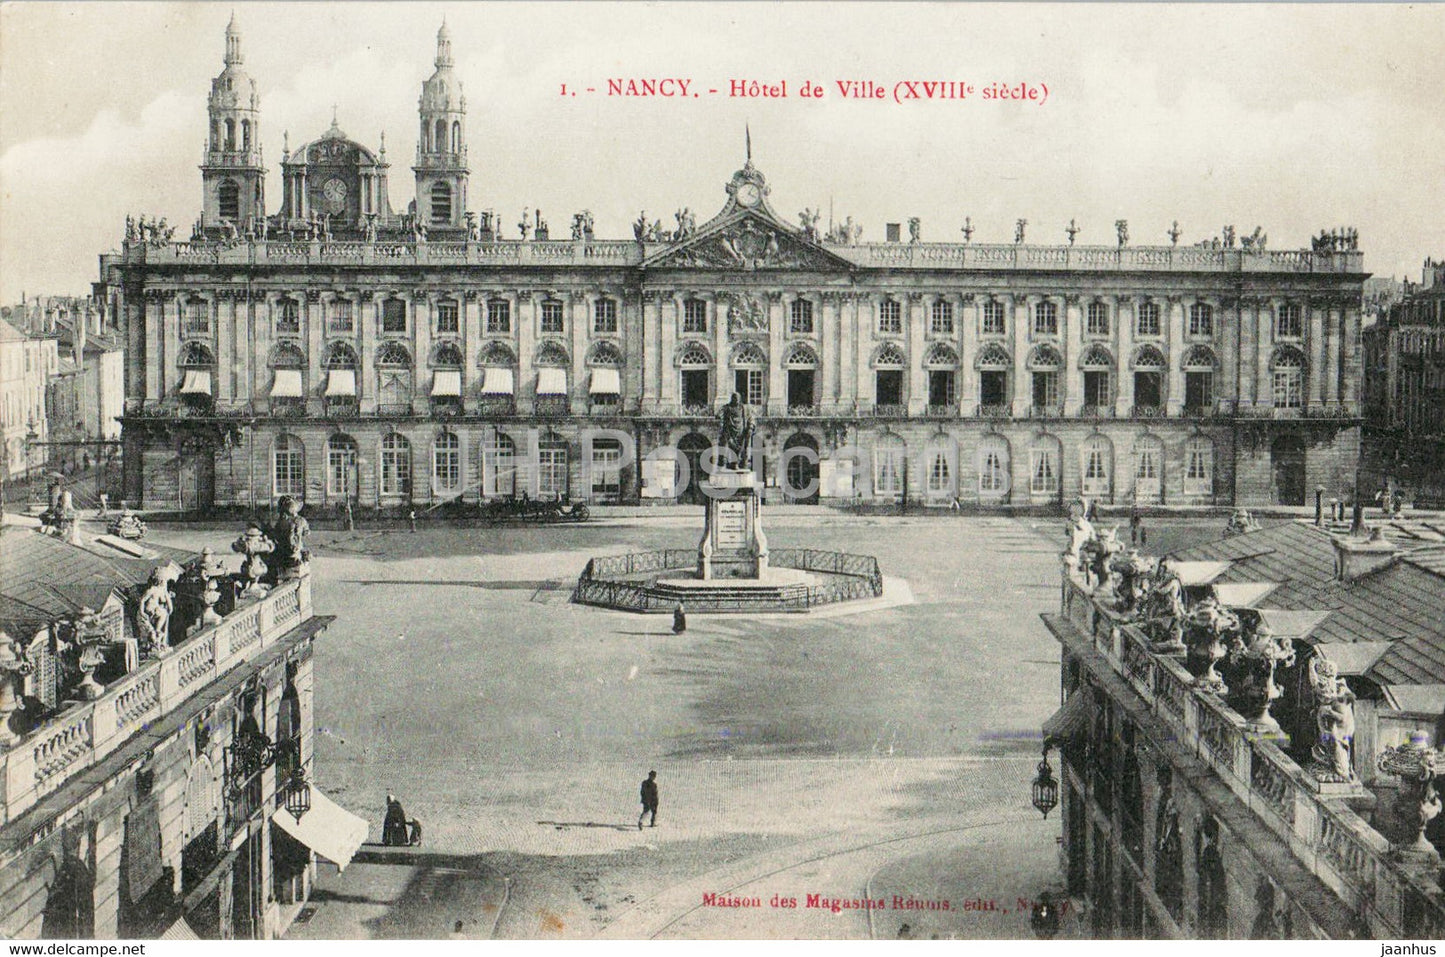 Nancy - Hotel de Ville - 1 - old postcard - France - unused - JH Postcards